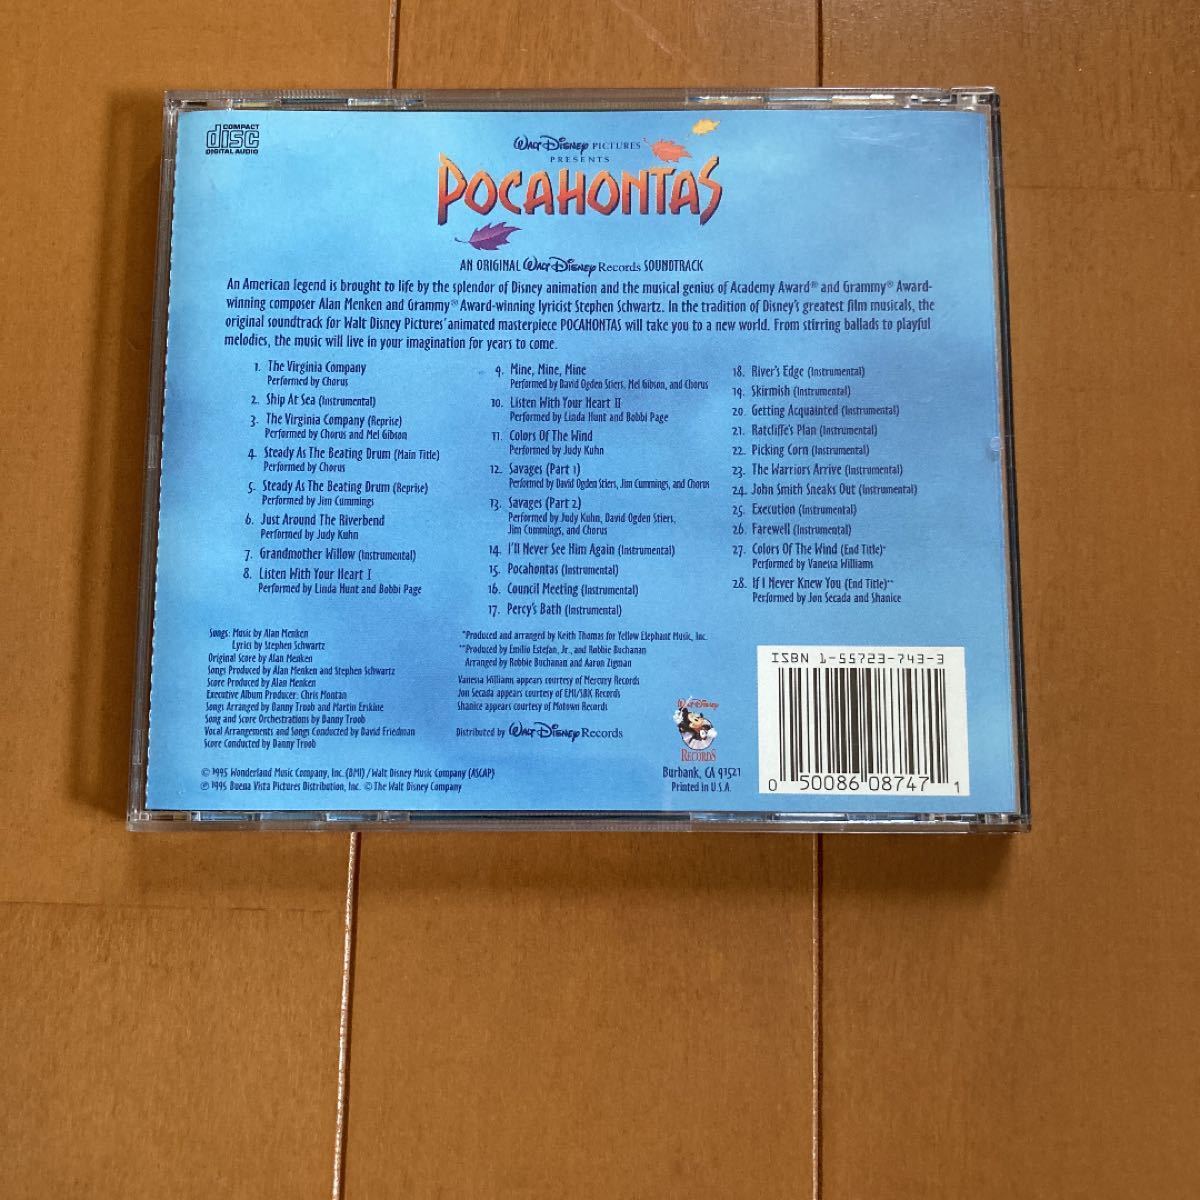 ディズニー　ポカホンタス　CD